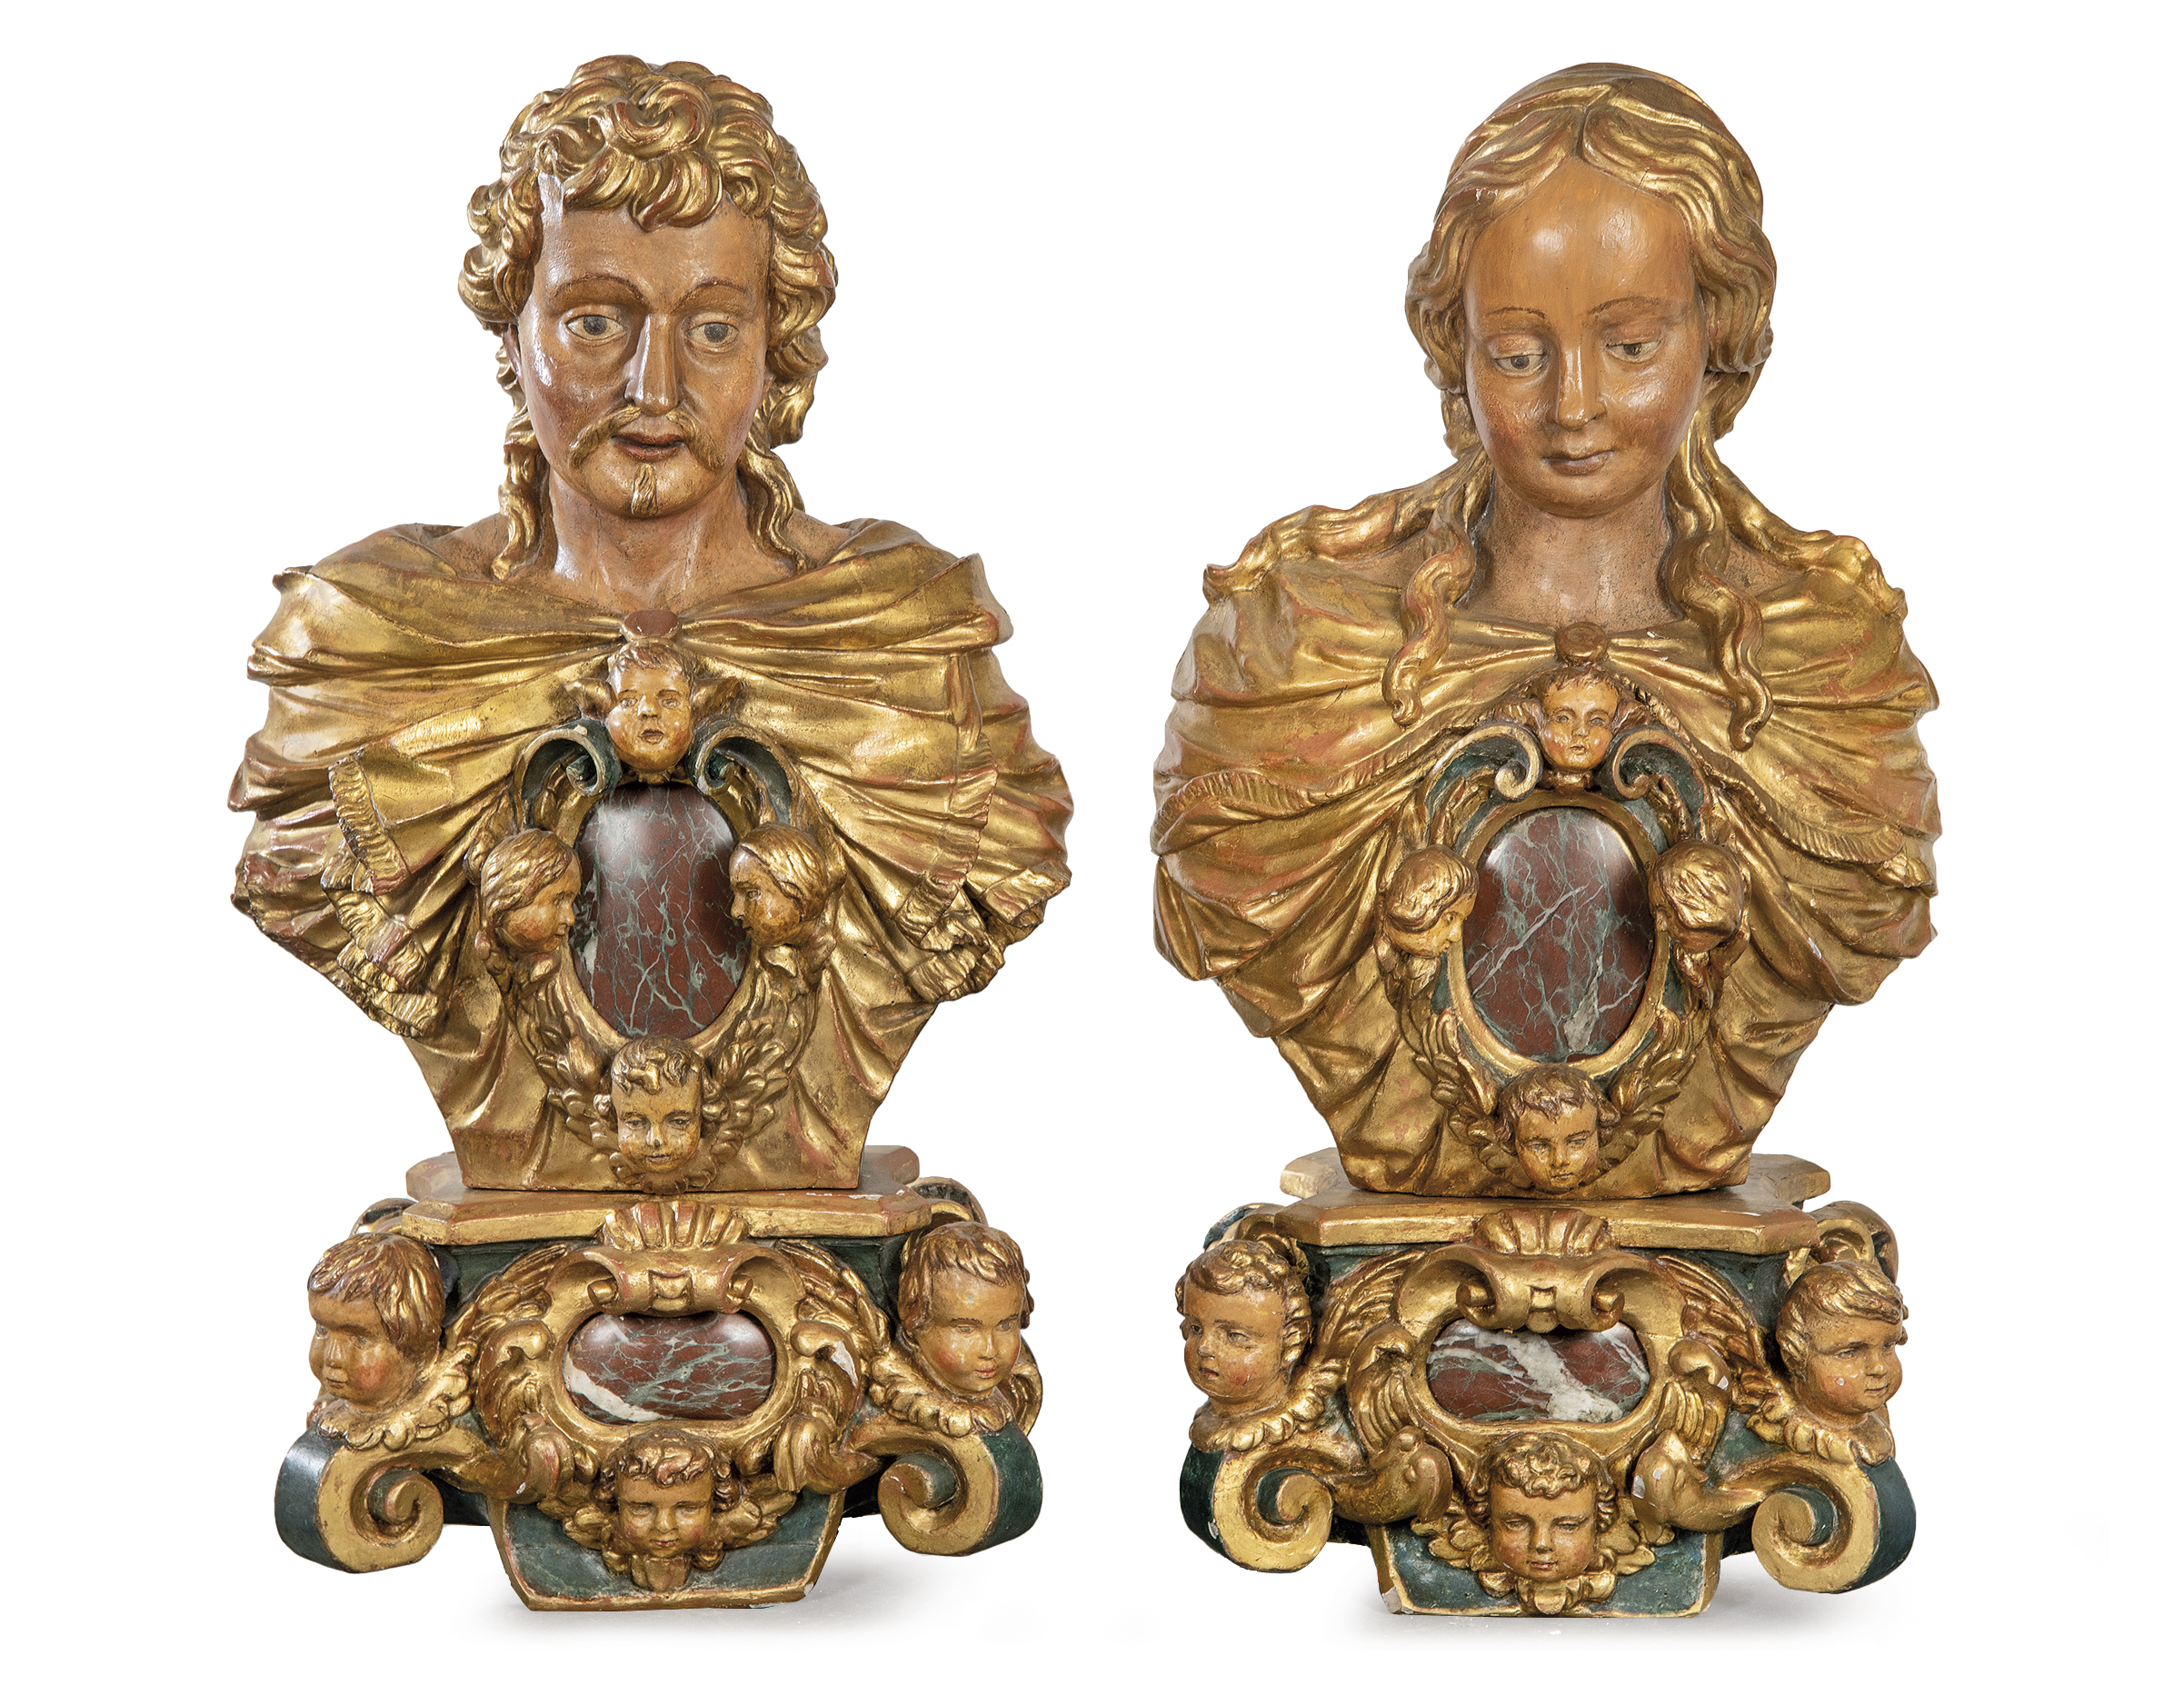 Segre ofrece una pareja de bustos relicarios napolitanos del siglo XVII